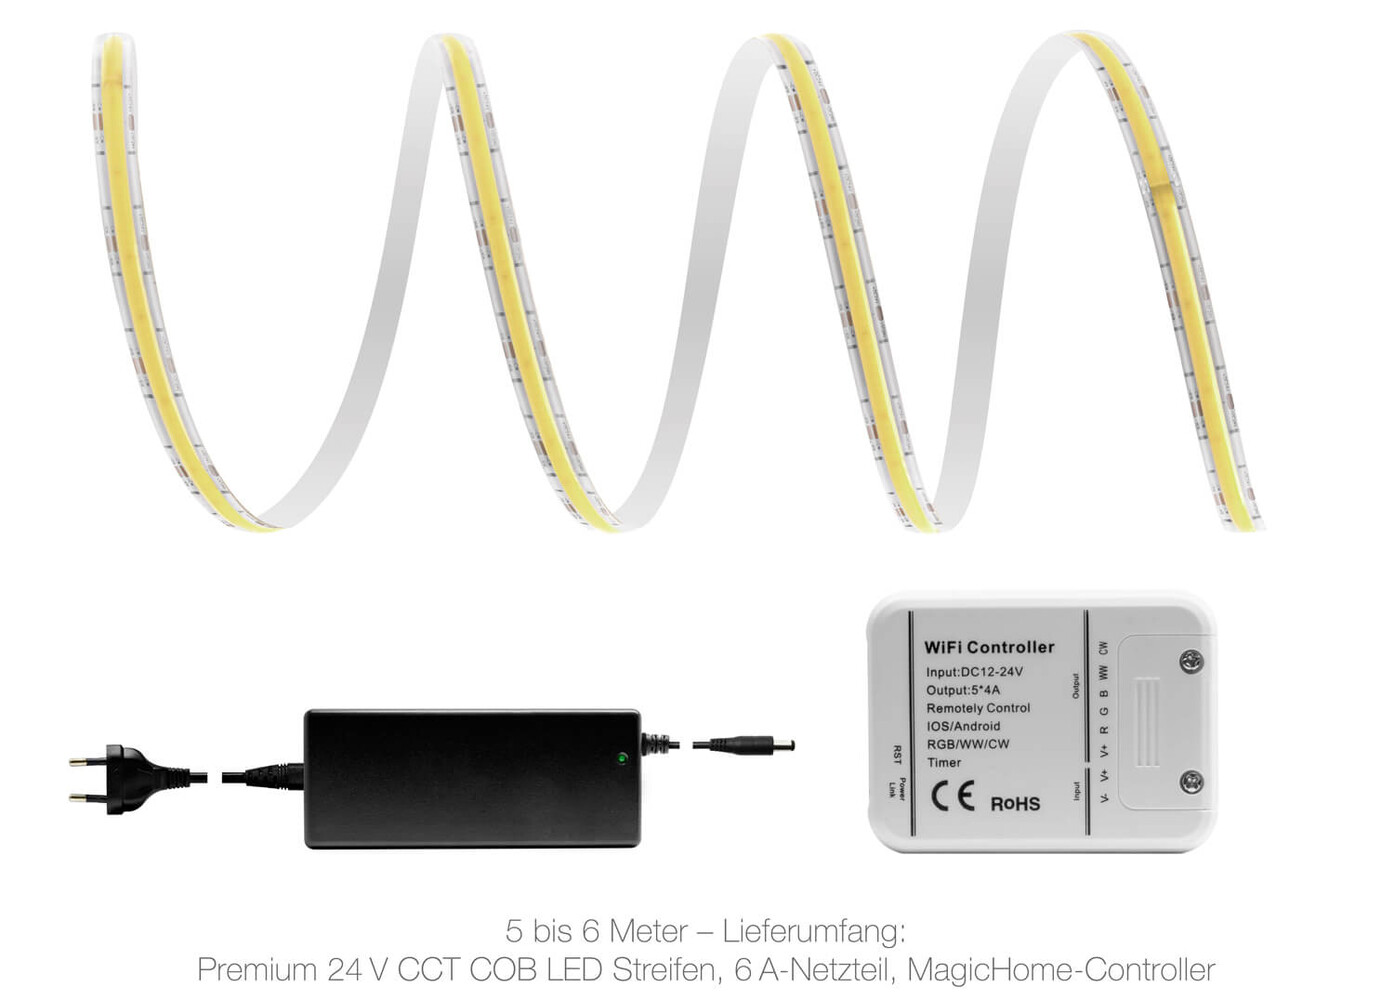 Qualitativer high-end LED Streifen von LED Universum - Premium 24V CCT COB mit IP65 Wasserbeständigkeit und WLAN-Set Magic Home